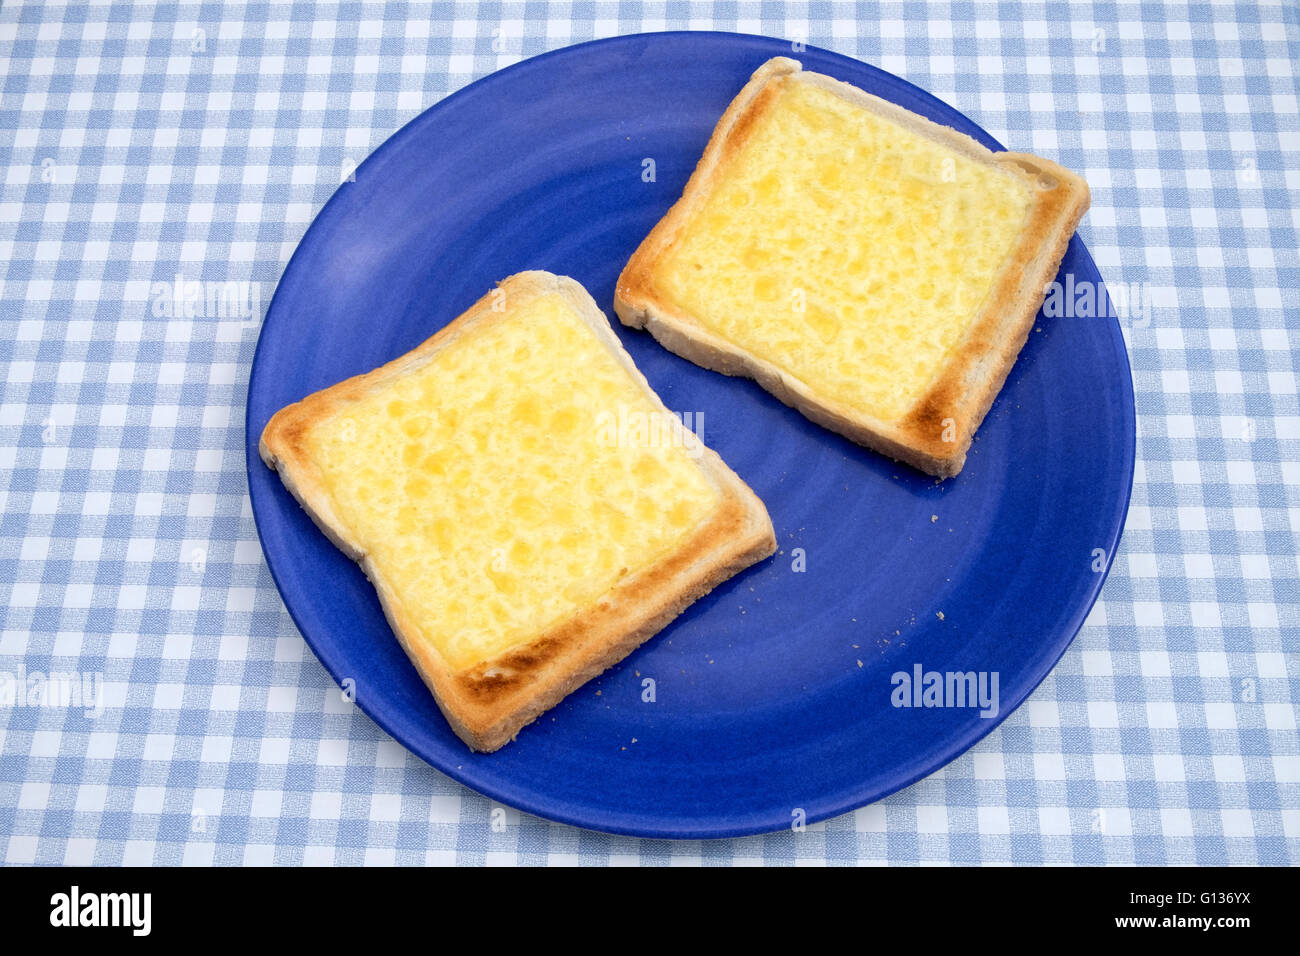 Cheese on toast Stock Photo